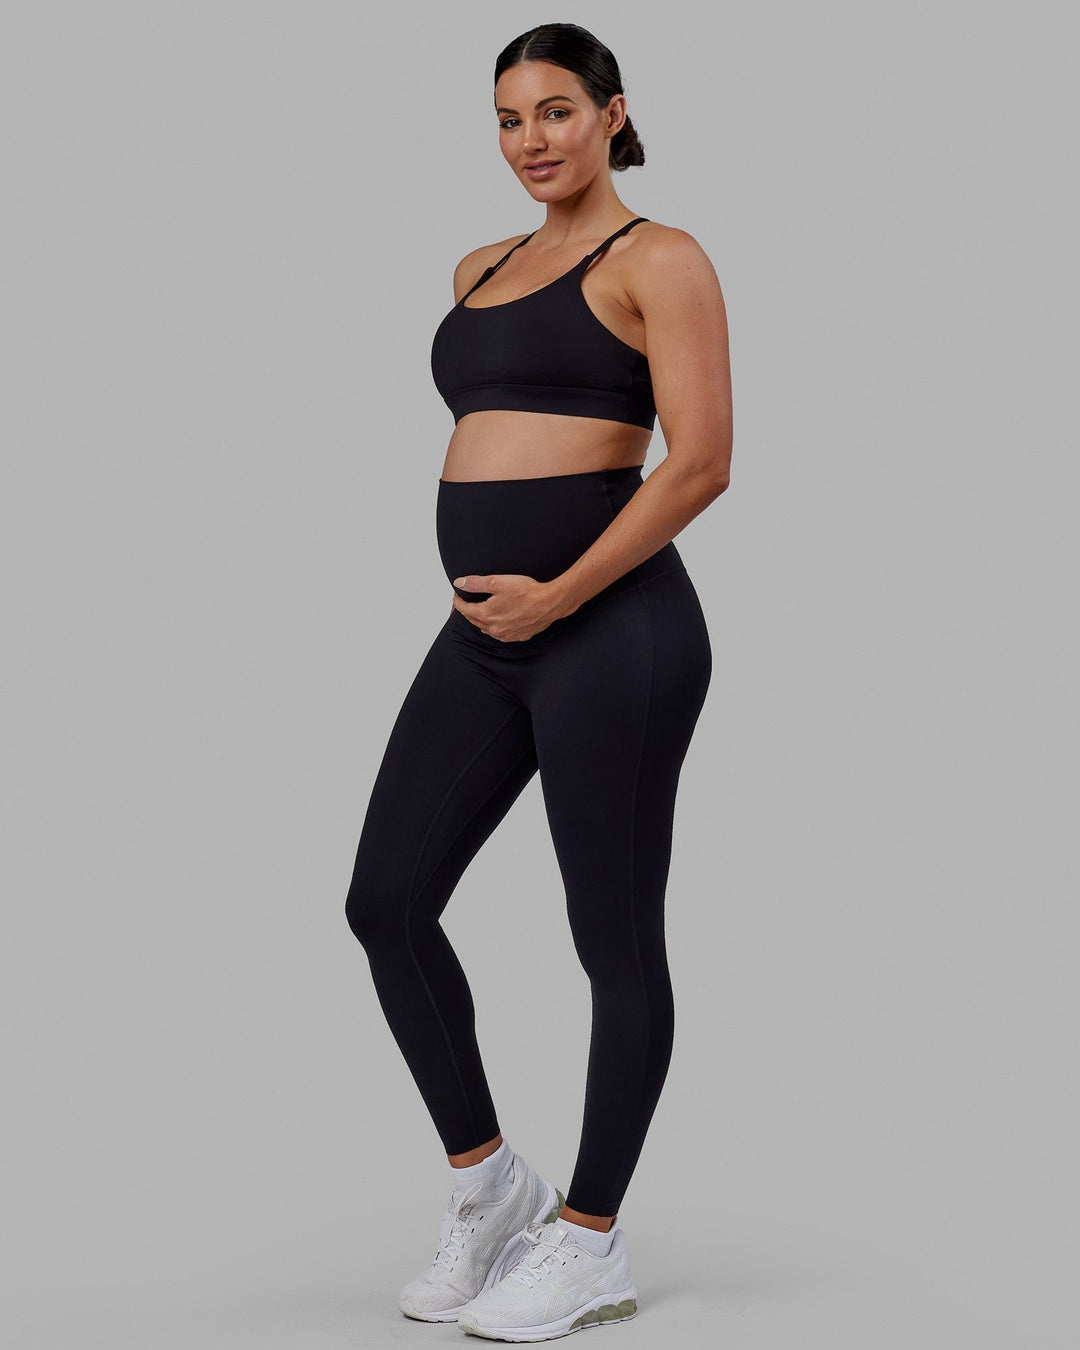 Elixir Full Length Maternity Leggings - Black